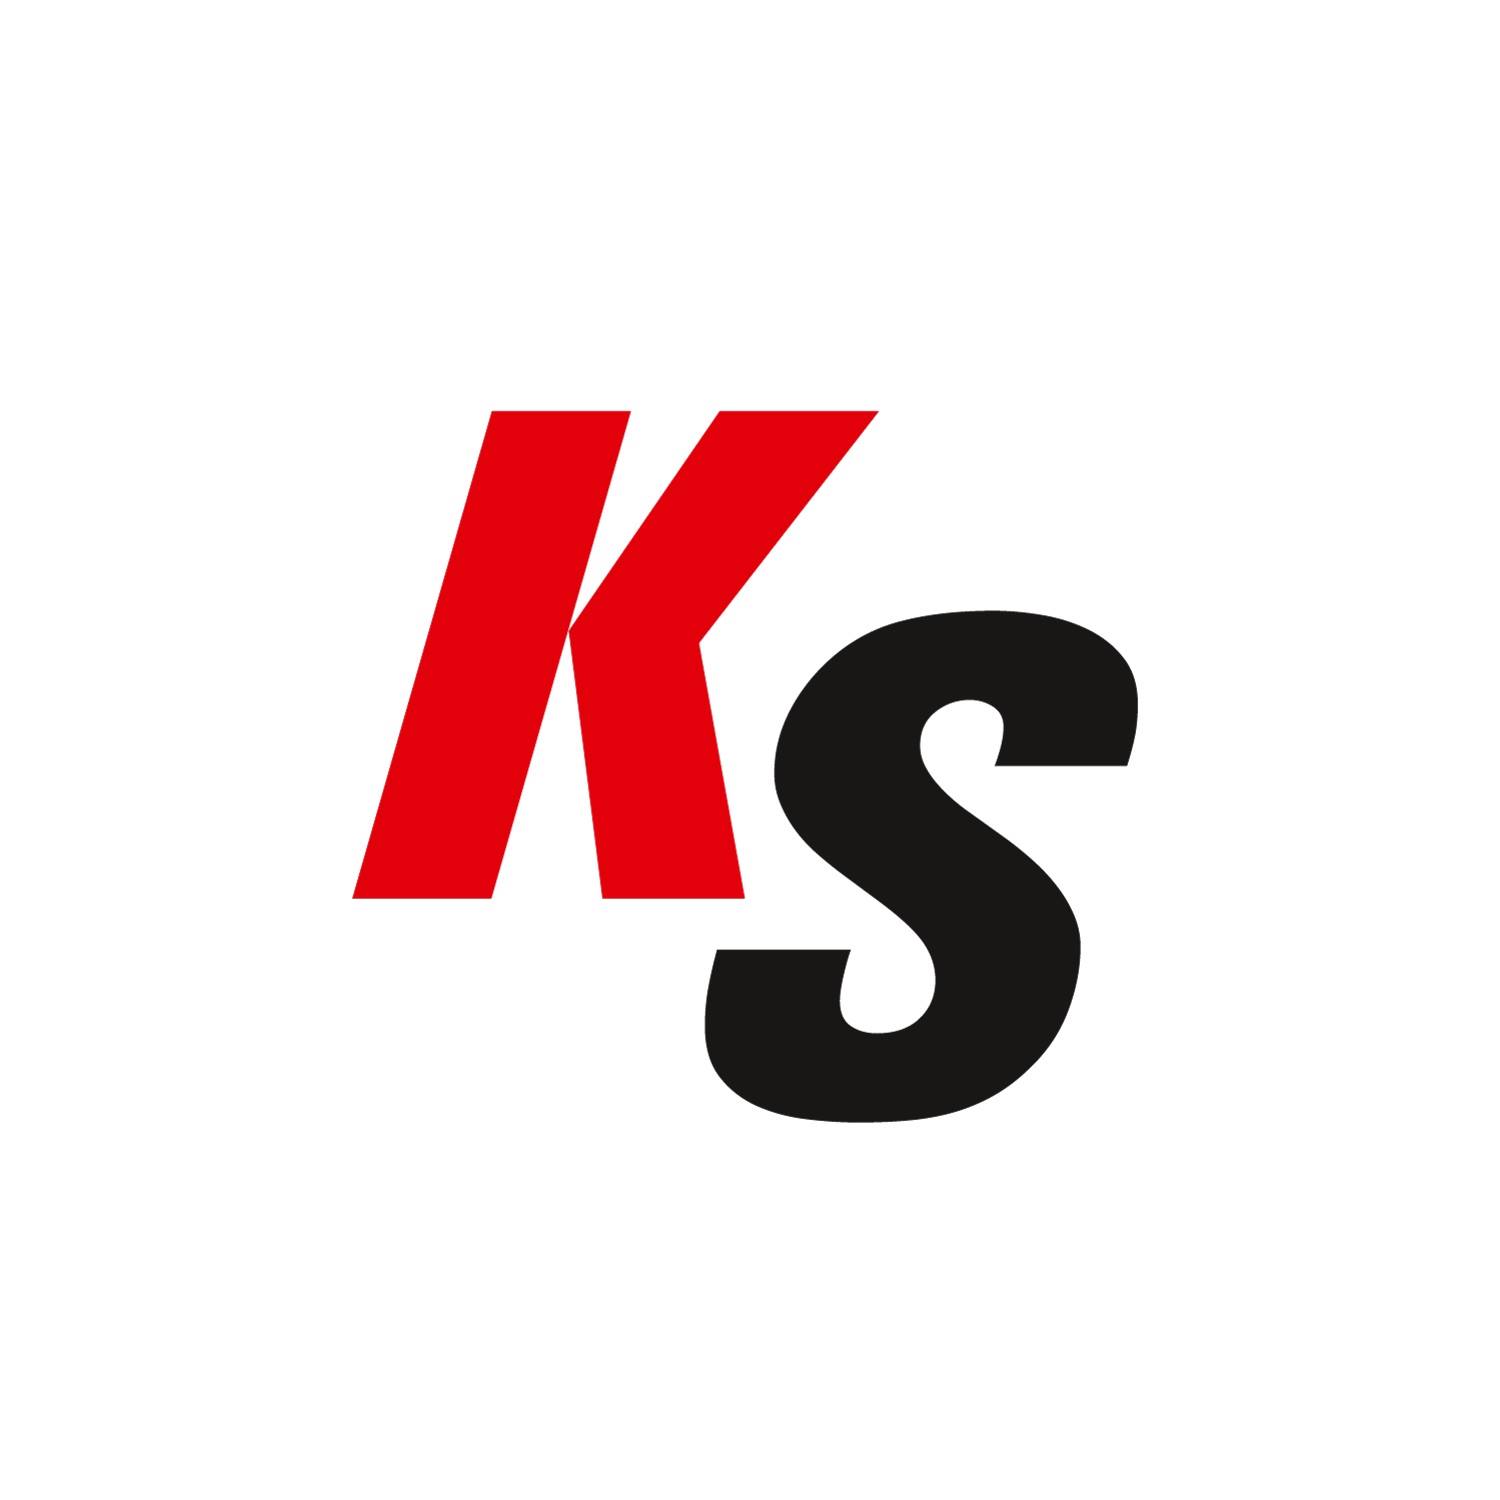 Kicksshop.nl reviews, beoordelingen en ervaringen